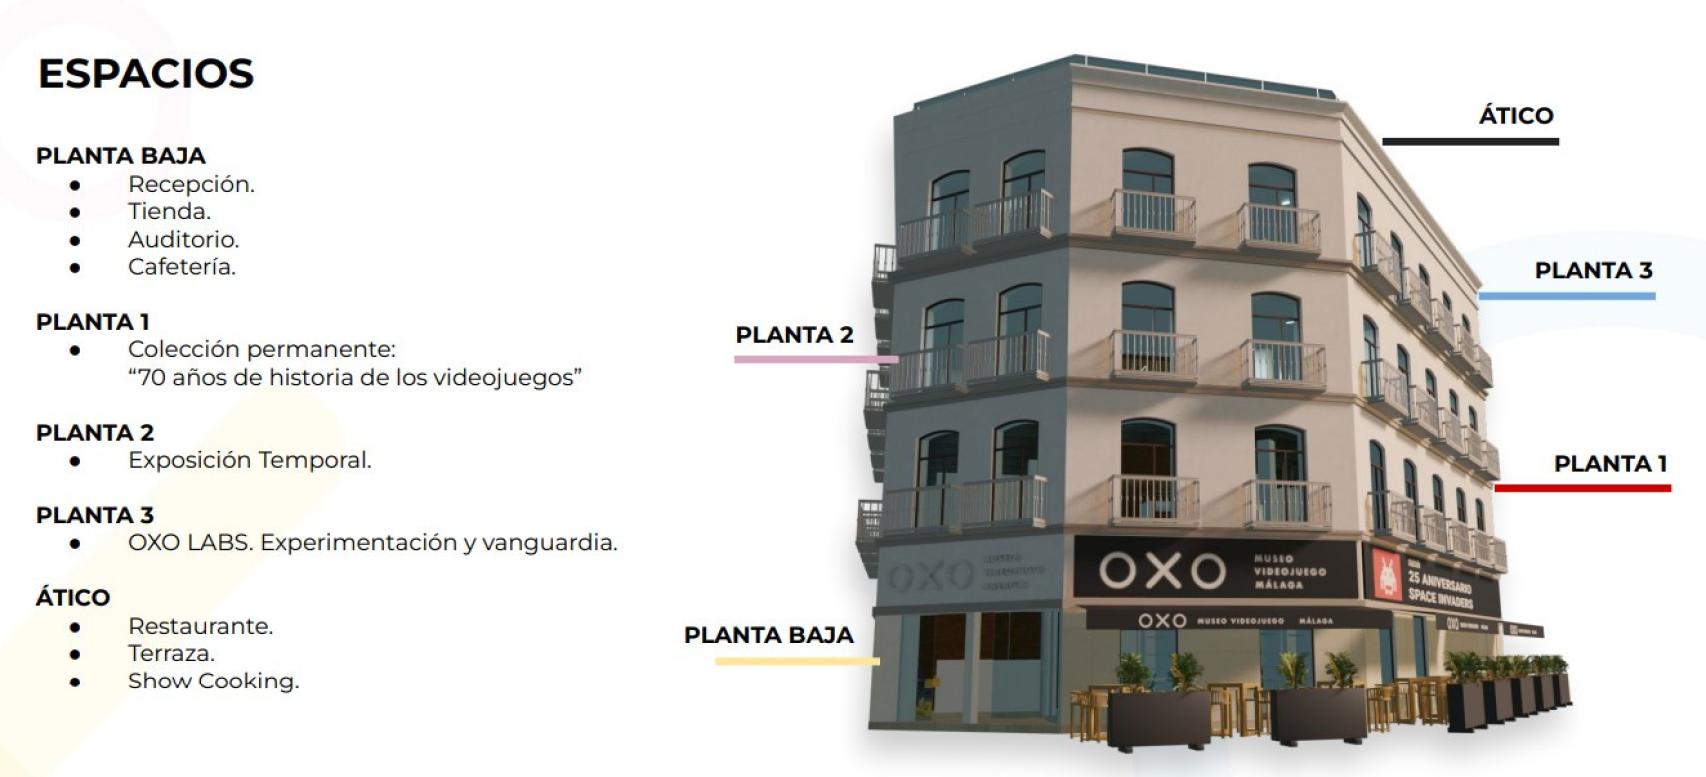 La distribución del Museo OXO